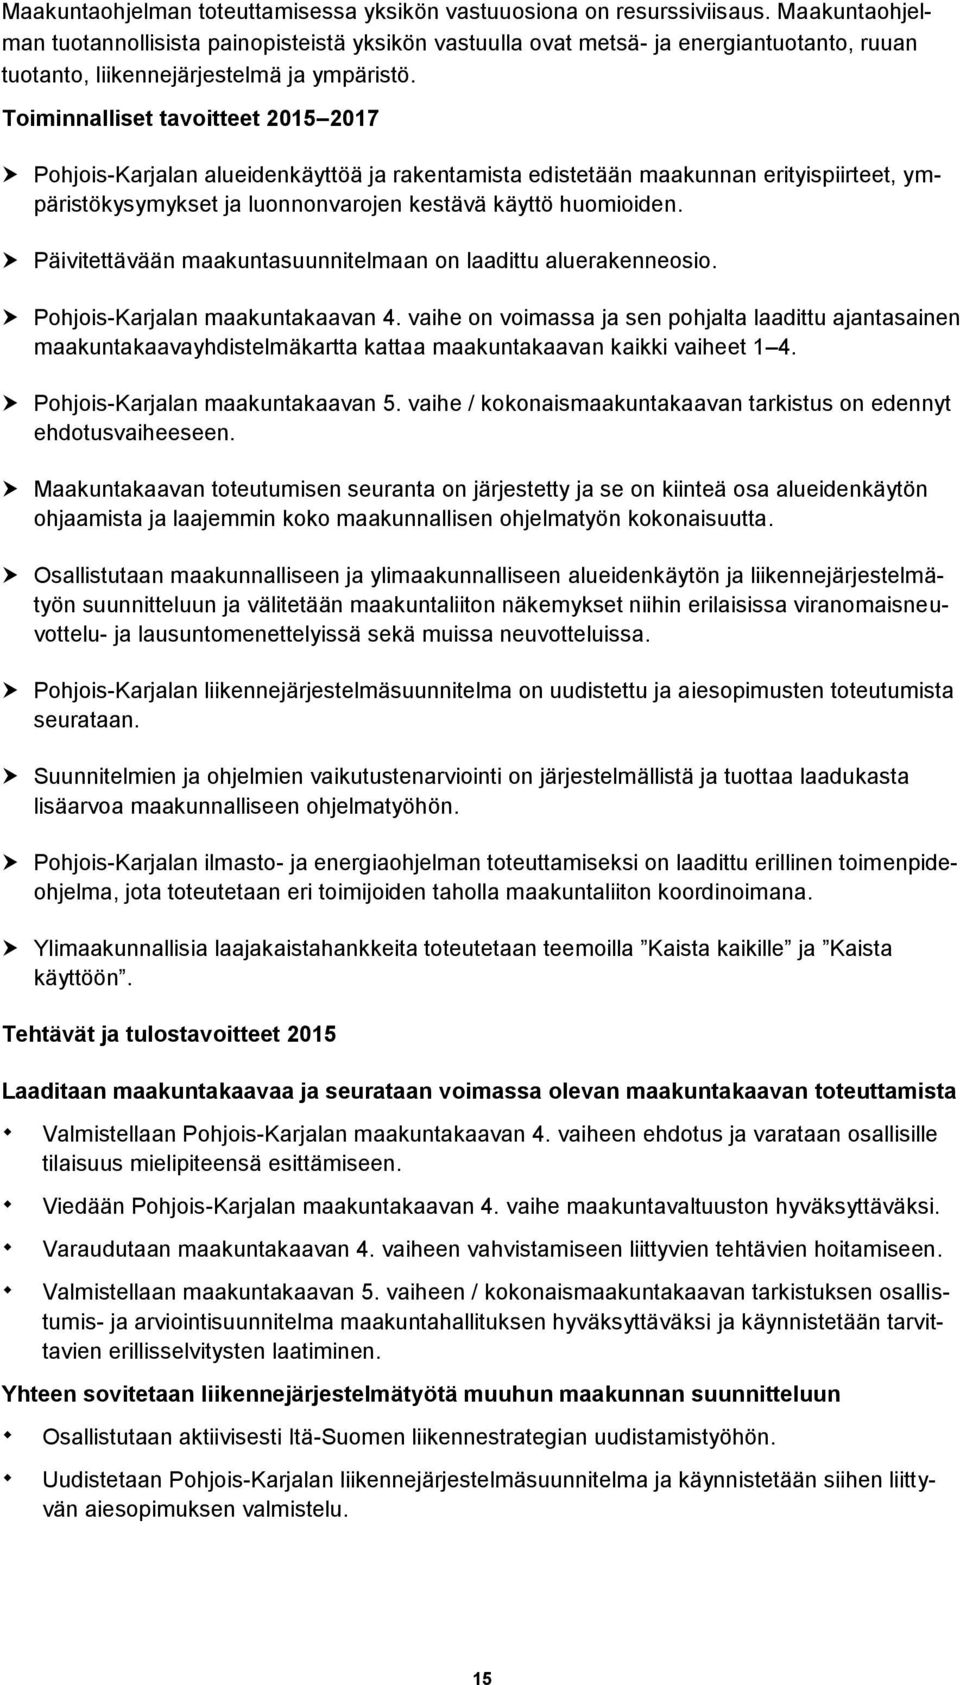 Toiminnalliset tavoitteet 2015 2017 Pohjois-Karjalan alueidenkäyttöä ja rakentamista edistetään maakunnan erityispiirteet, ympäristökysymykset ja luonnonvarojen kestävä käyttö huomioiden.